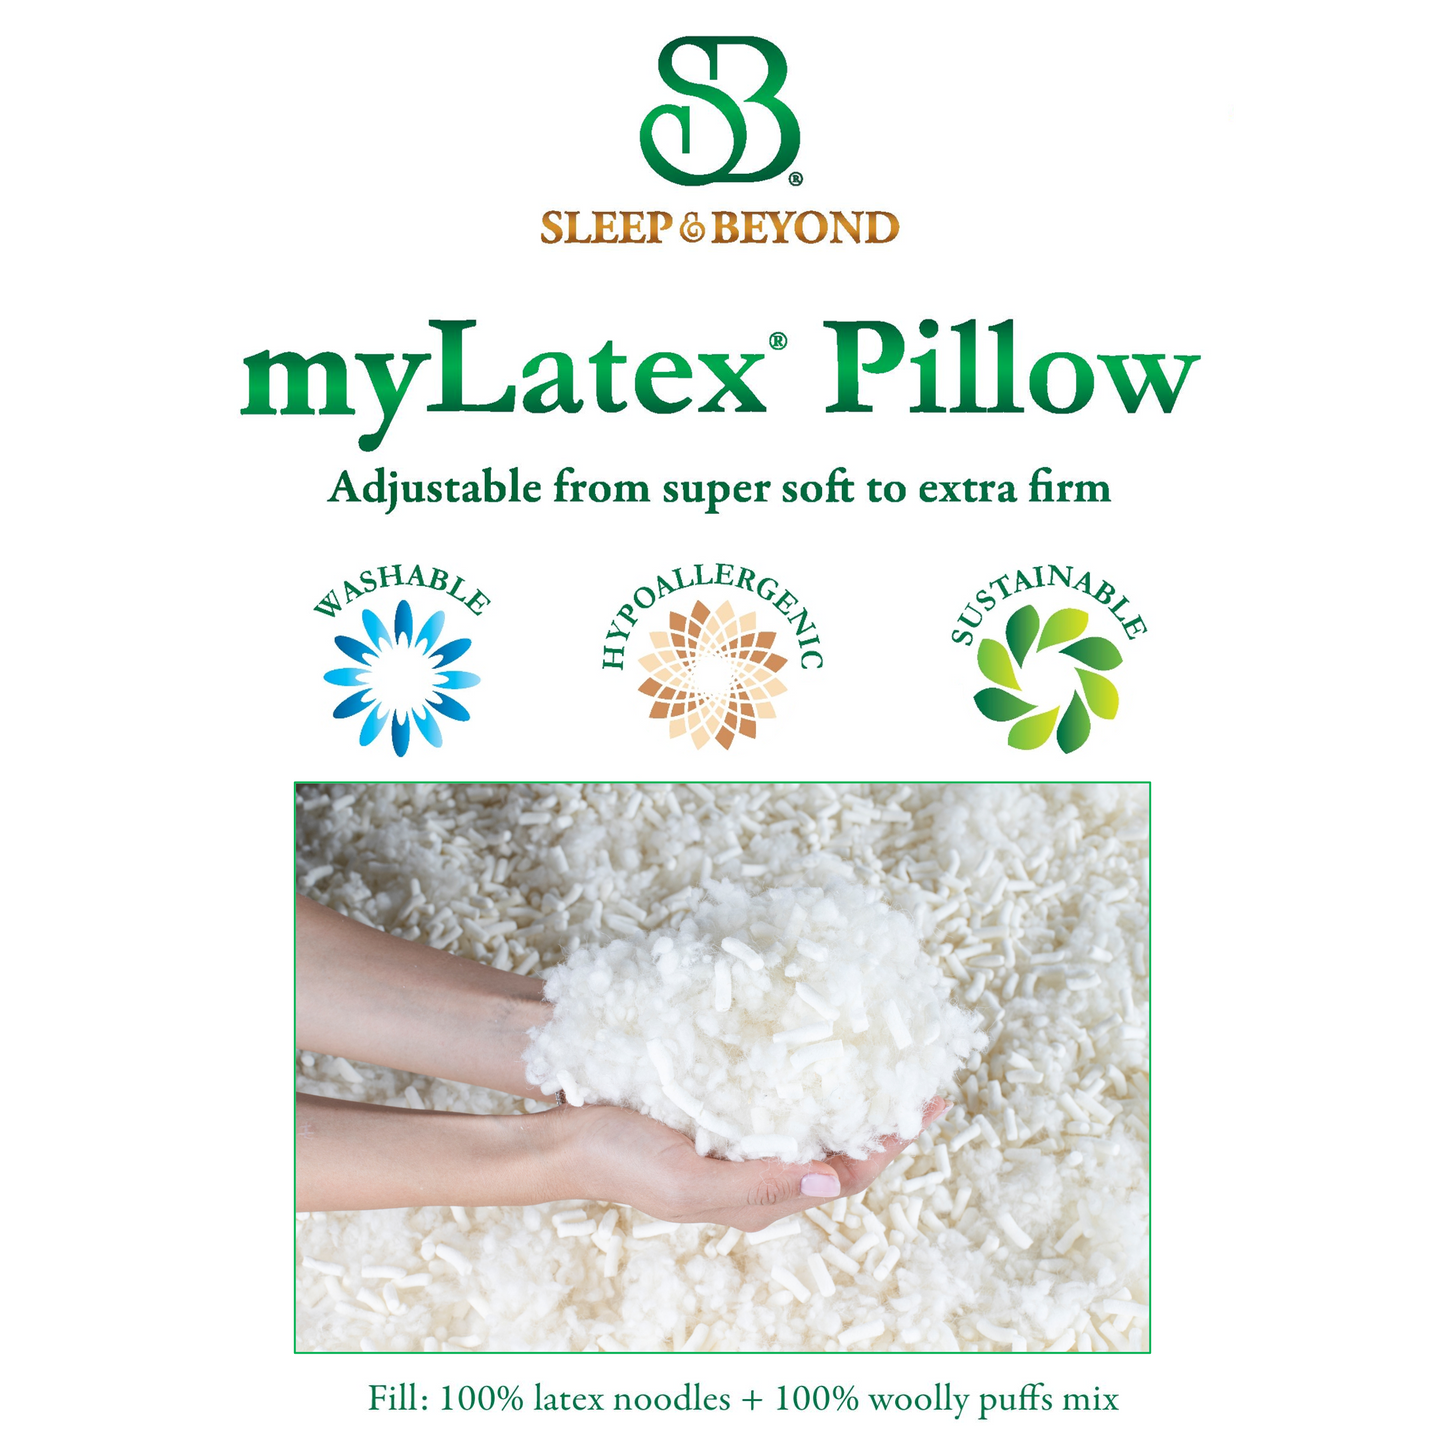 myLatex Pillow - 100% Natural & Adjustable